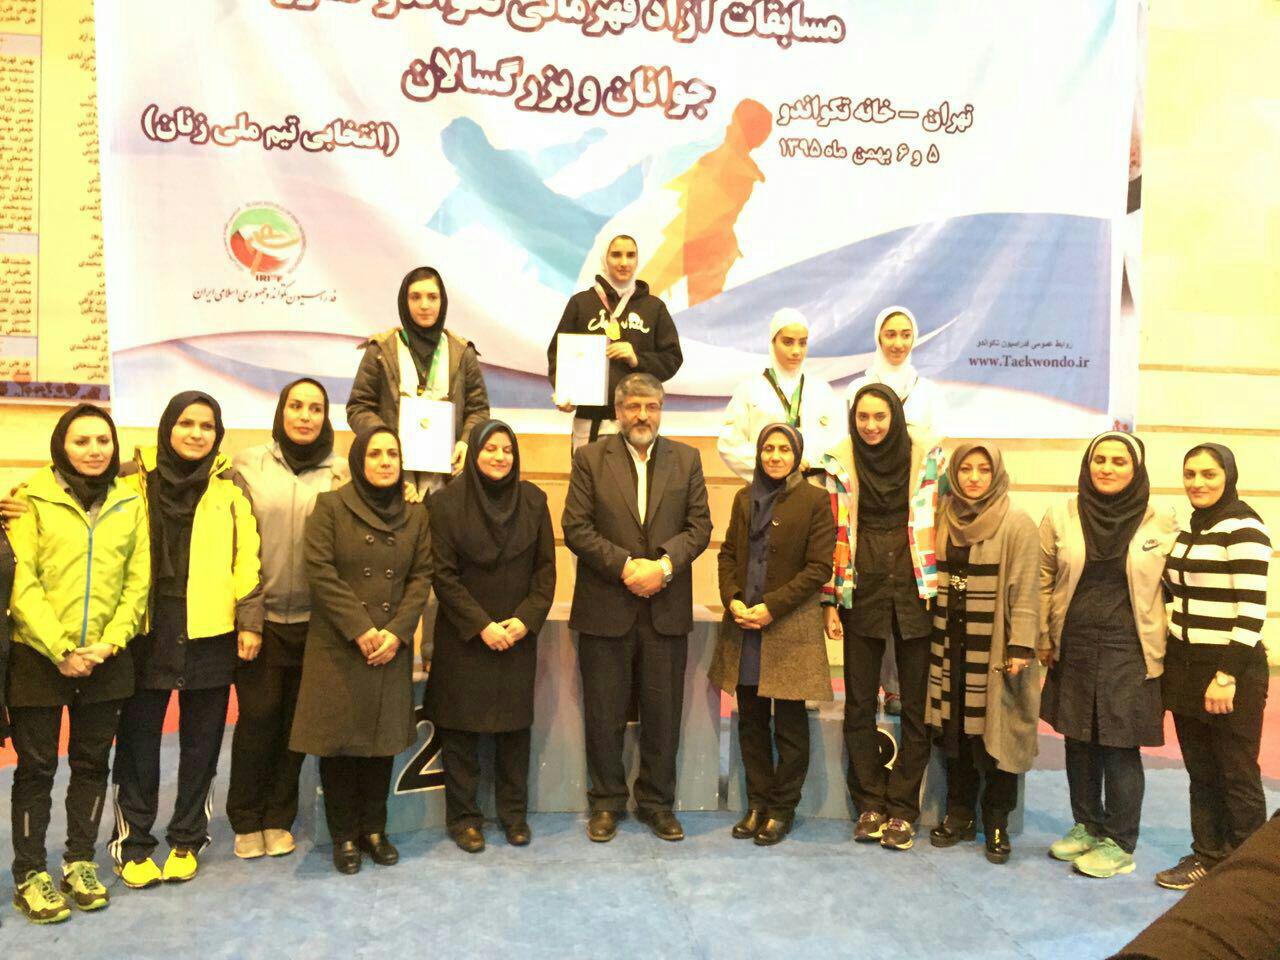 حجاب تفاوت ارزشمند ورزشکاران ایرانی است/ رضایت من در خوشحالی مردم  است